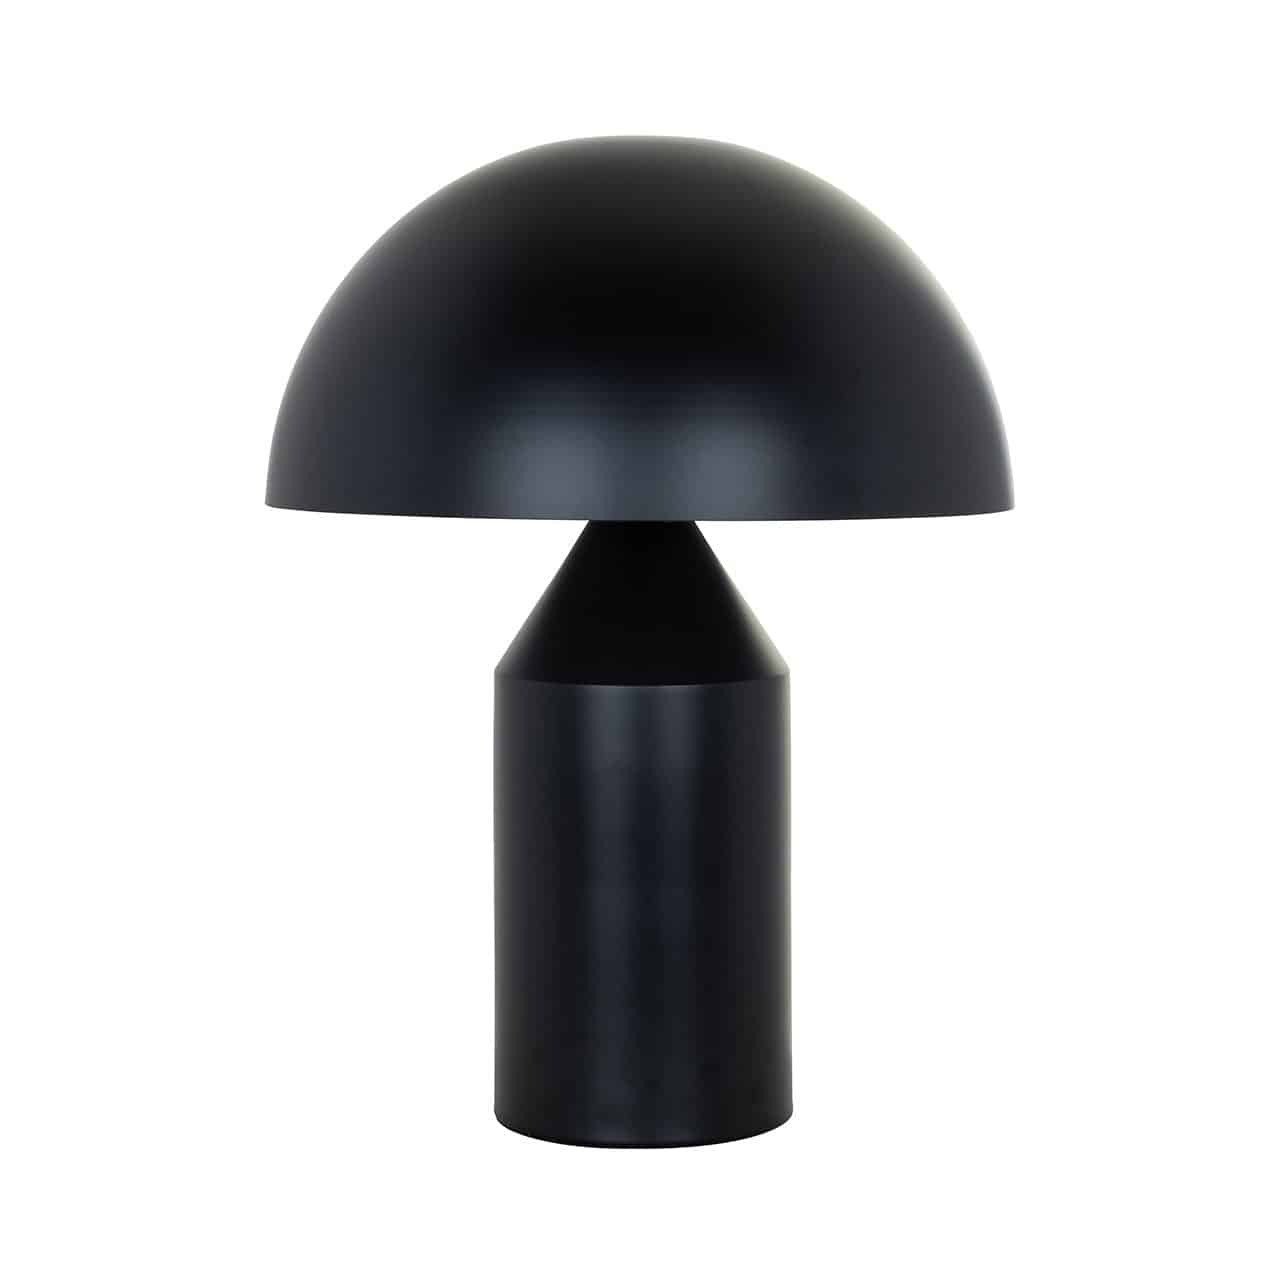 Richmond Alicia Table Lamp in Black - image 1